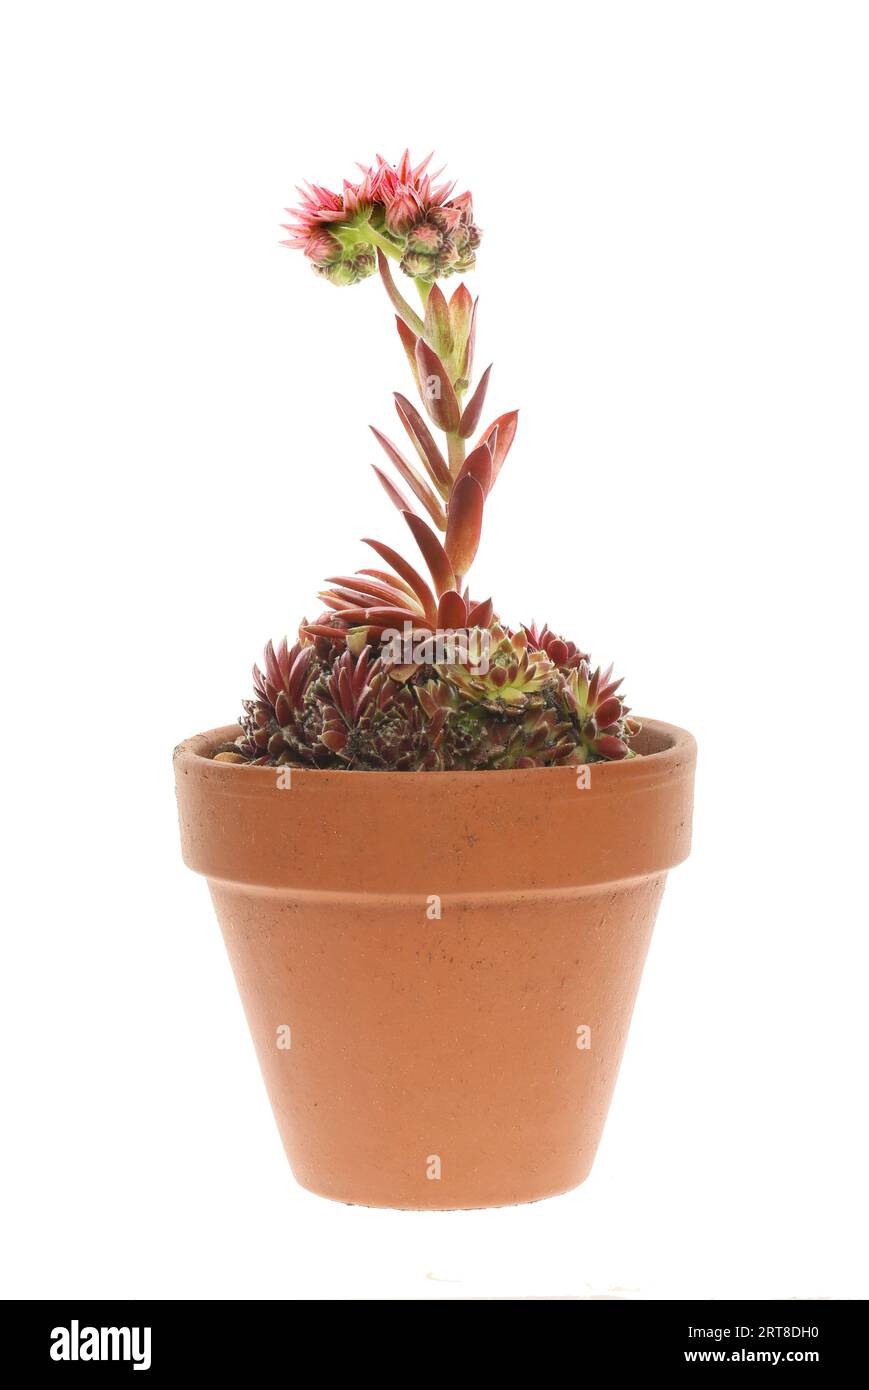 Plante houseleek fleurie dans un pot en terre cuite isolé contre blanc Banque D'Images